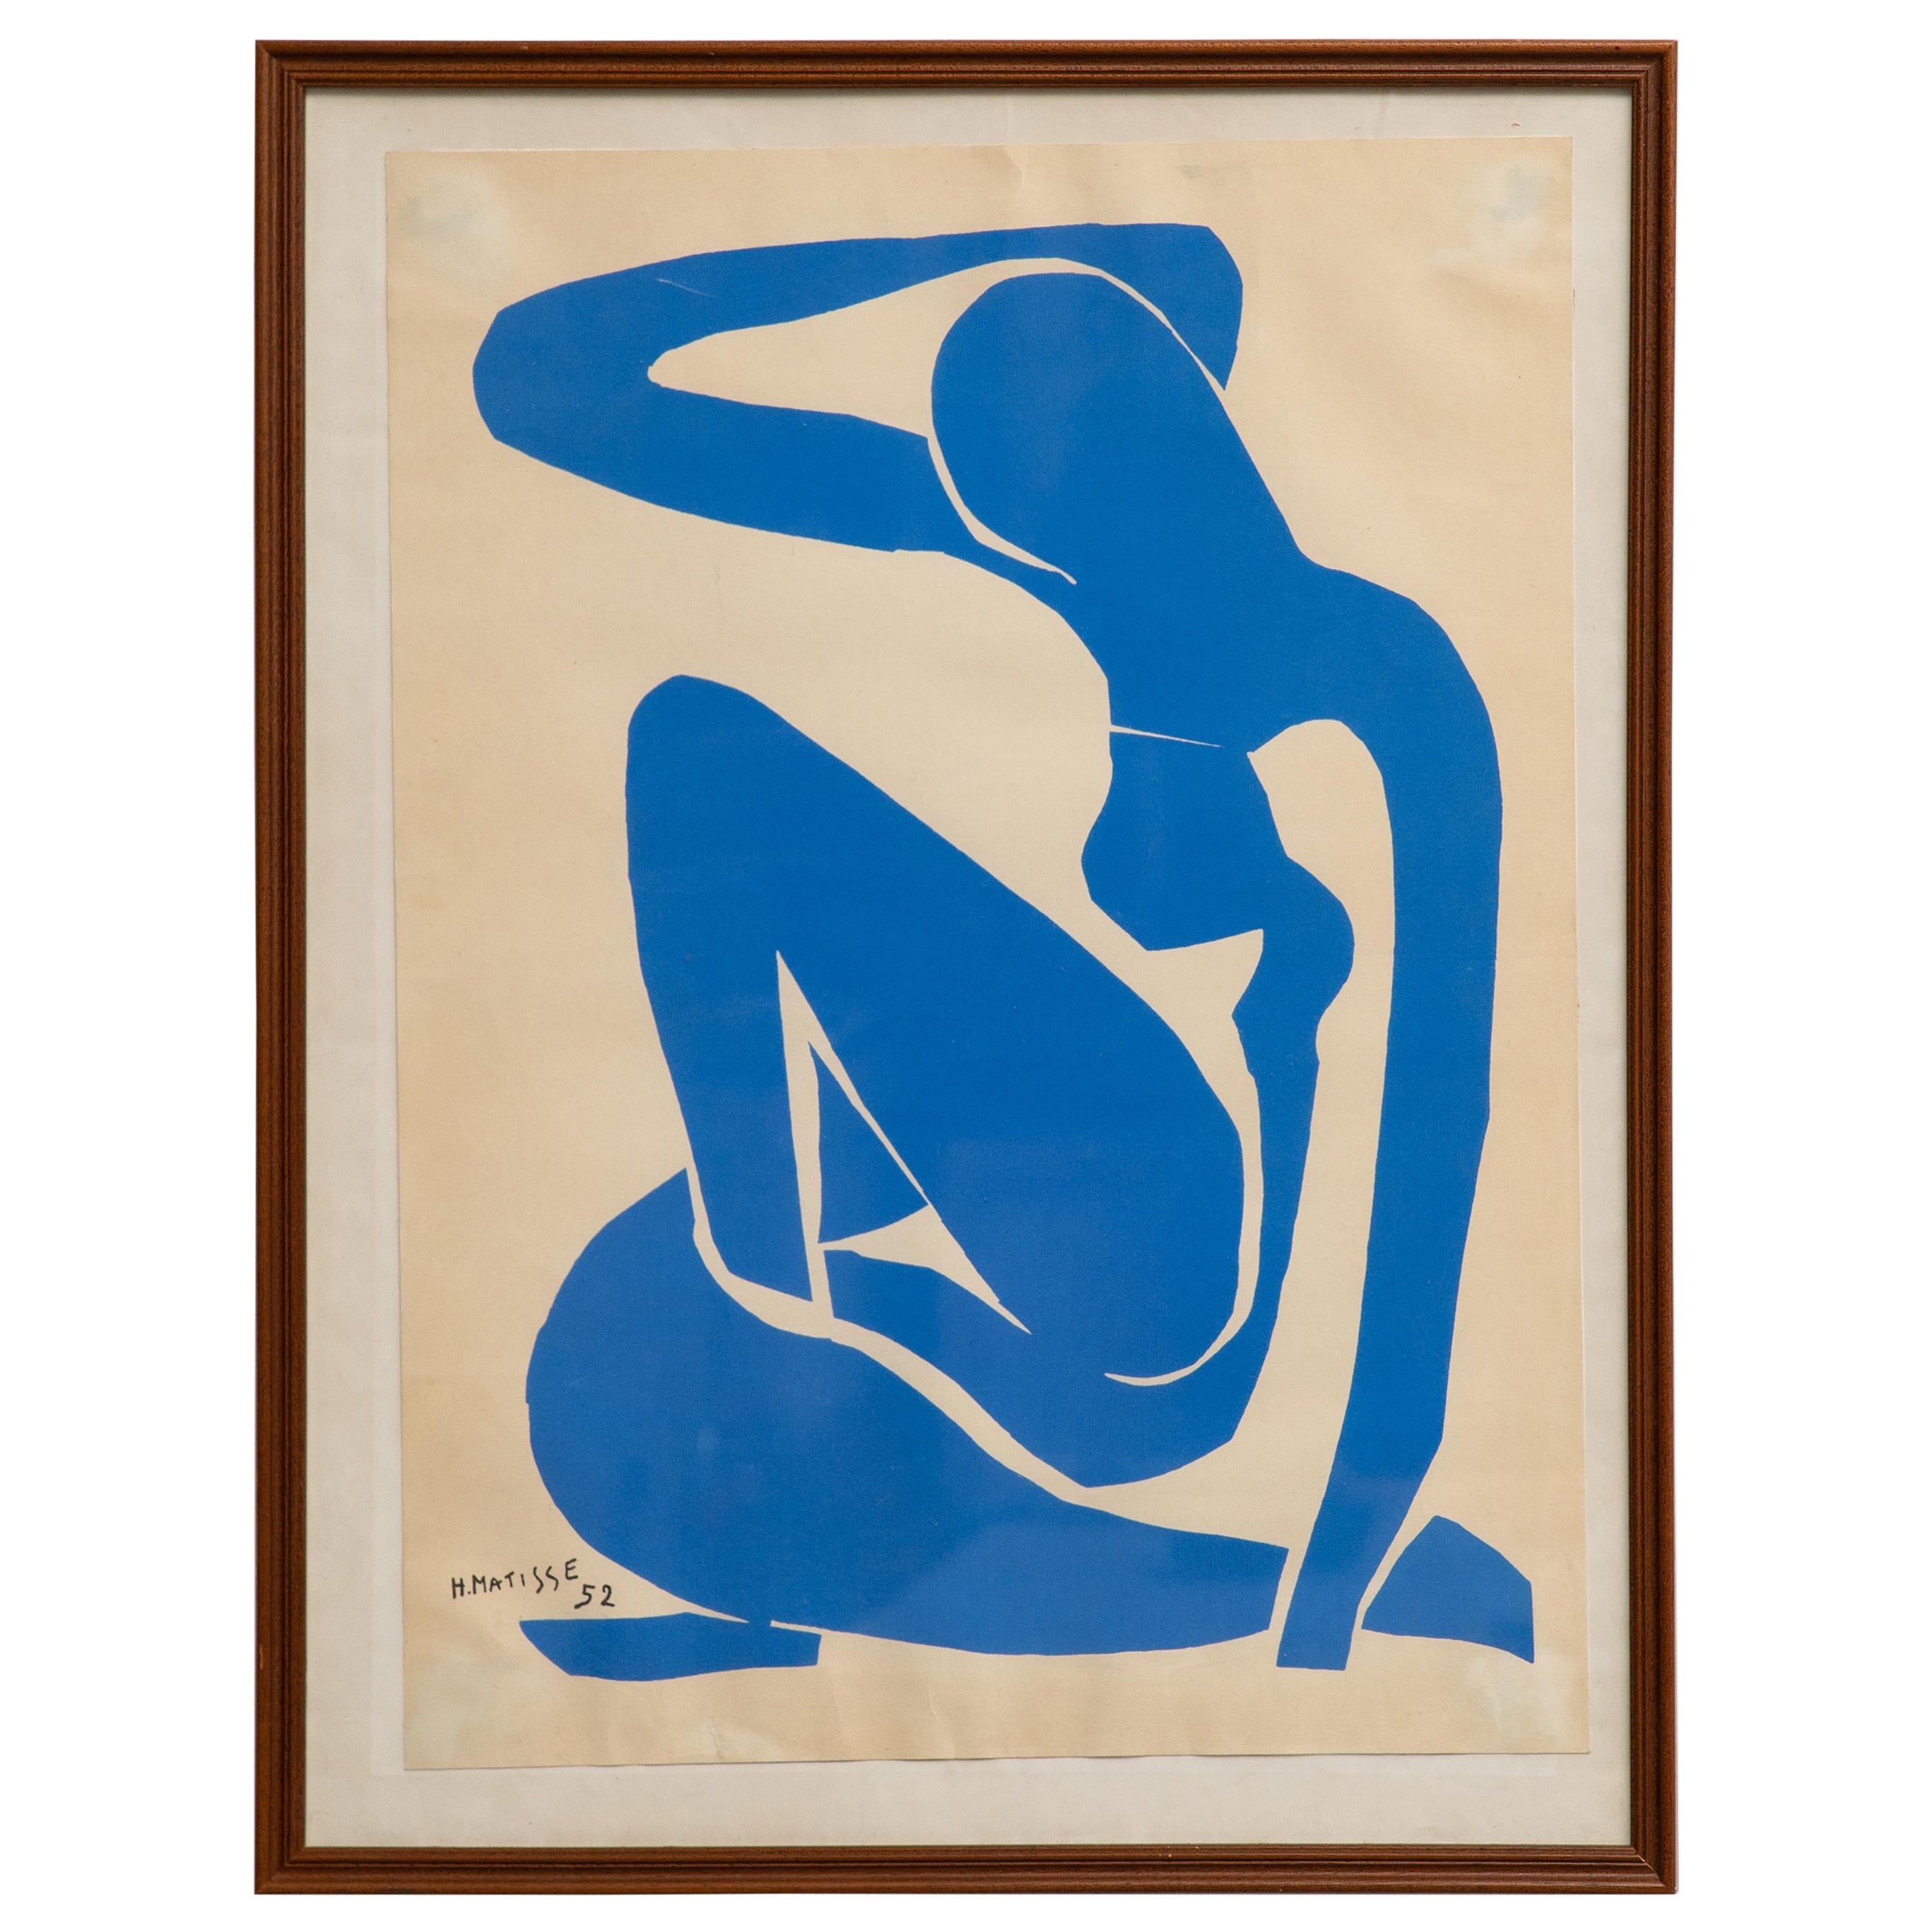 Framed After Henri Matisse Cut Out Blue Lithograph Nu Bleu 